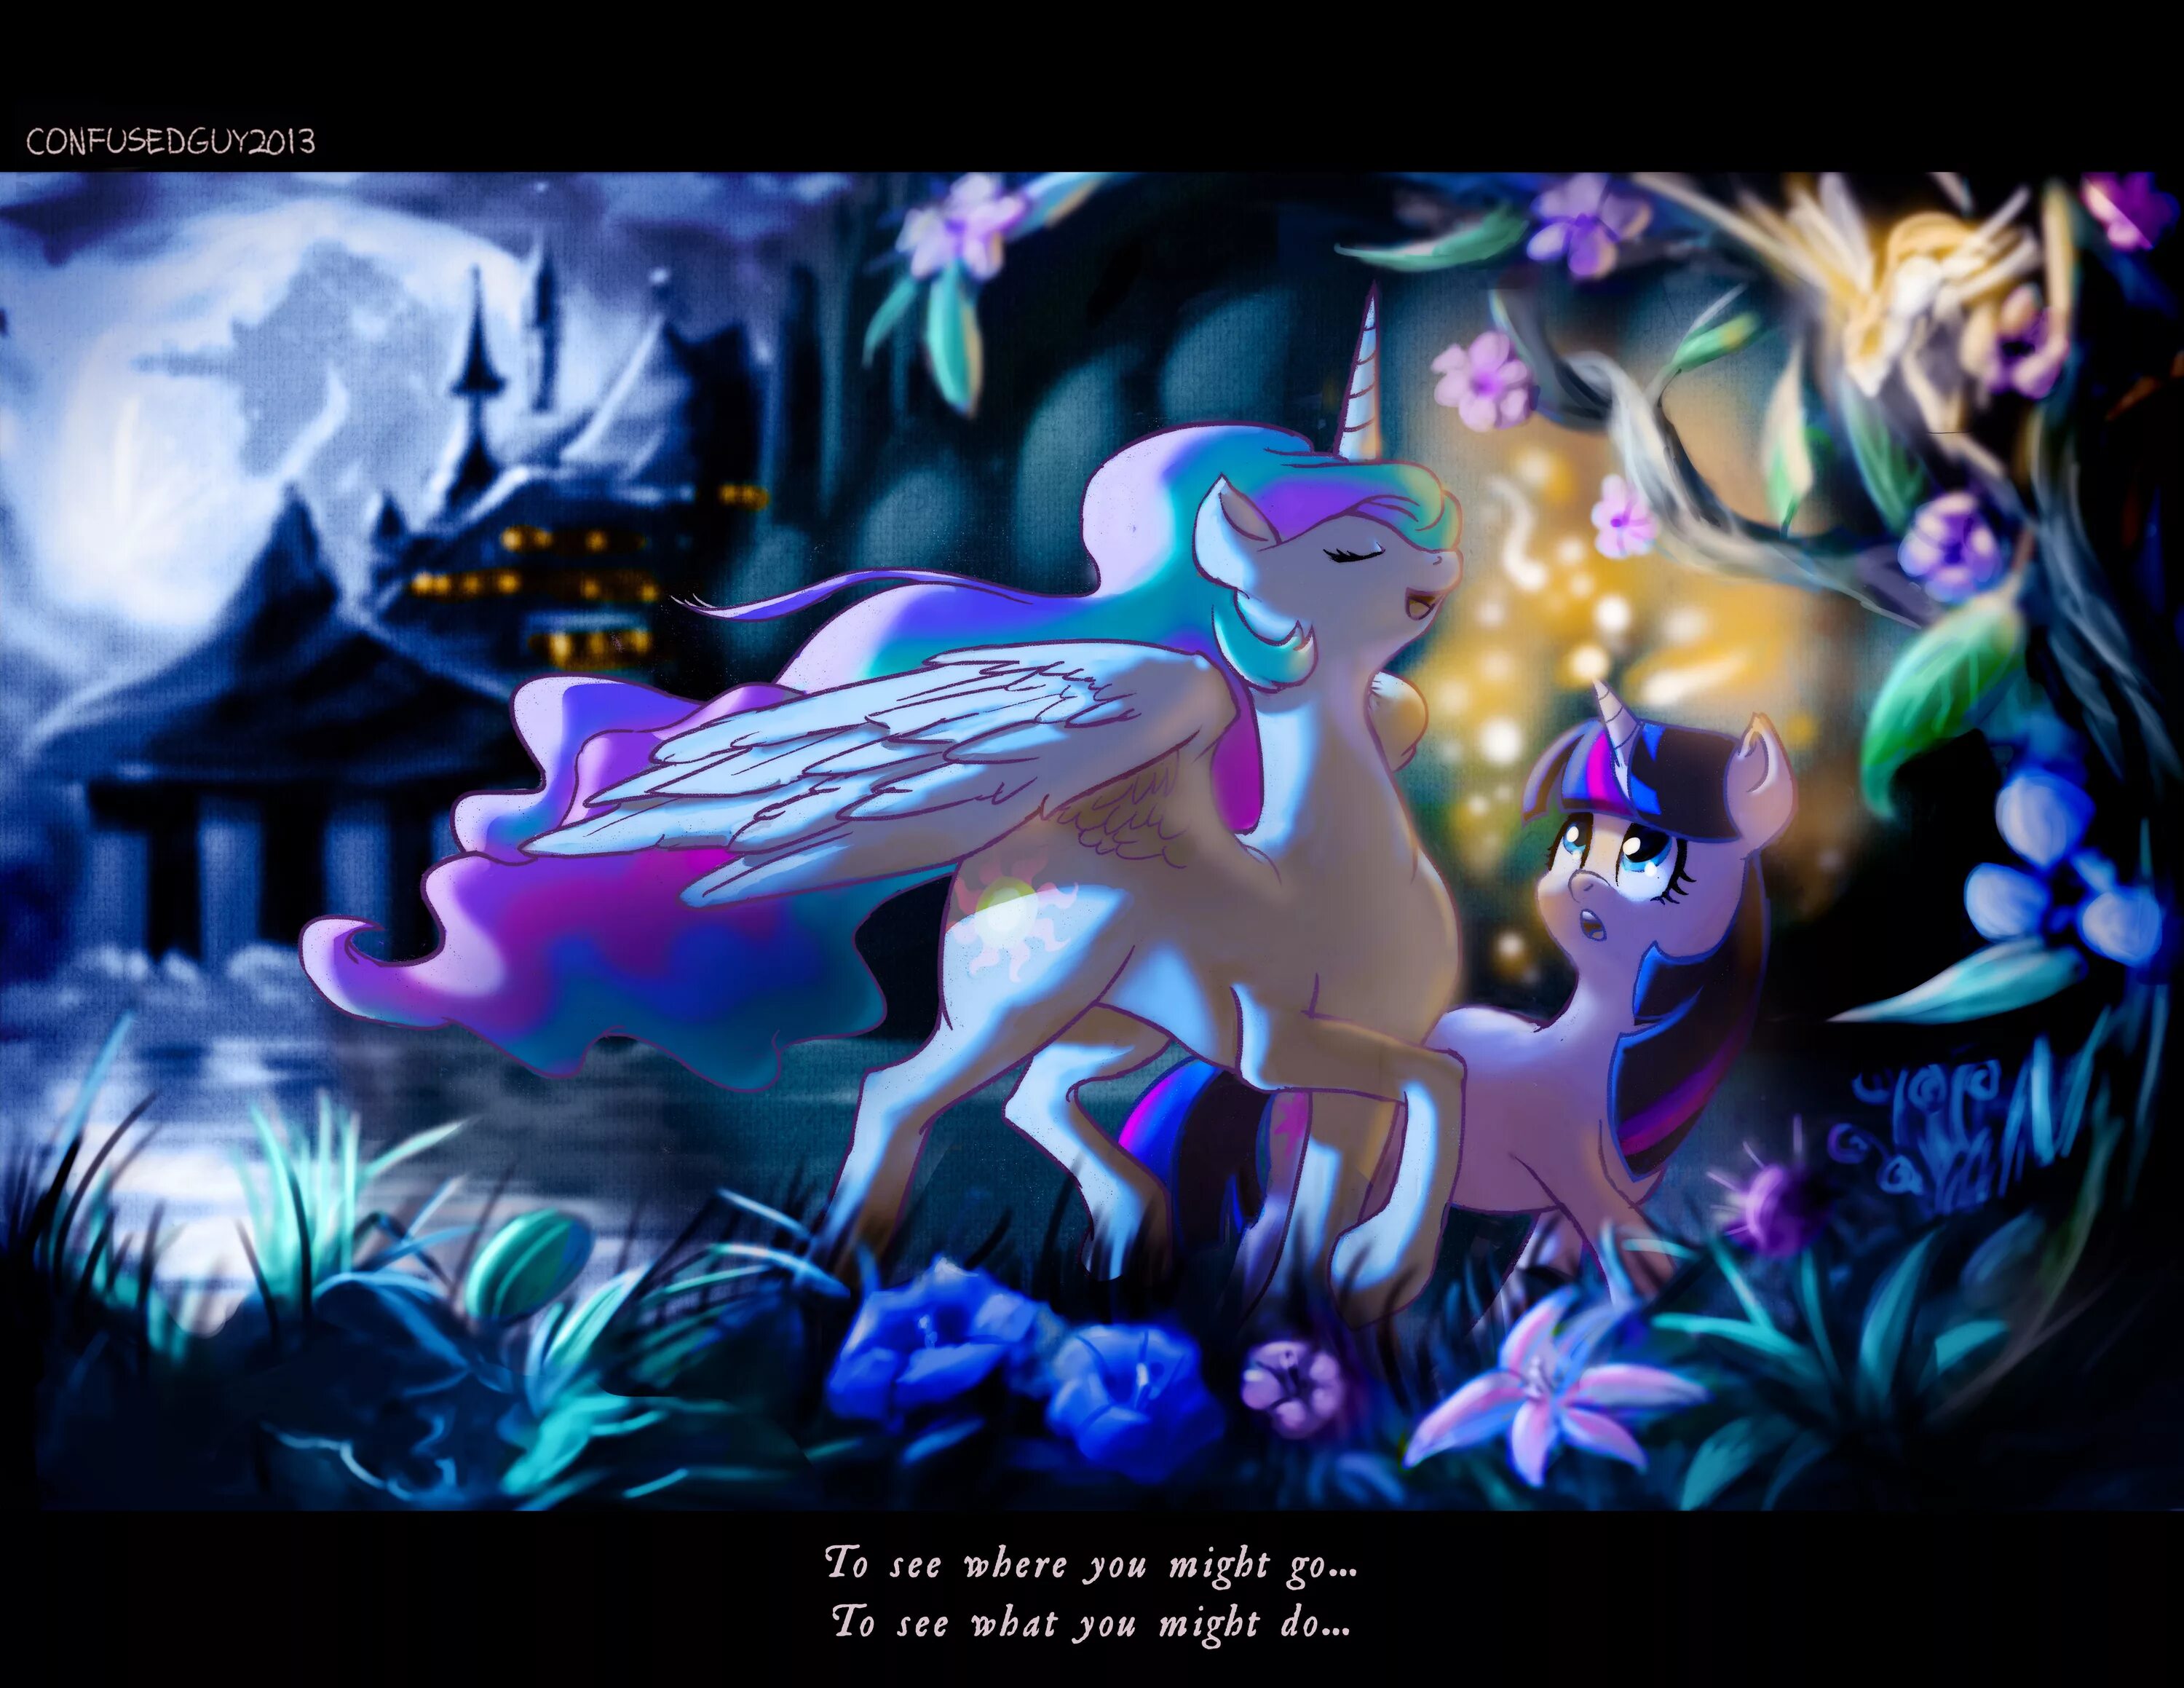 Новая версия май литл пони магия принцесс. МЛП магия принцесс. My little Pony магия принцесс Кантерлот. МЛП магия принцесс пони. Май Лито пони магич принцесс.